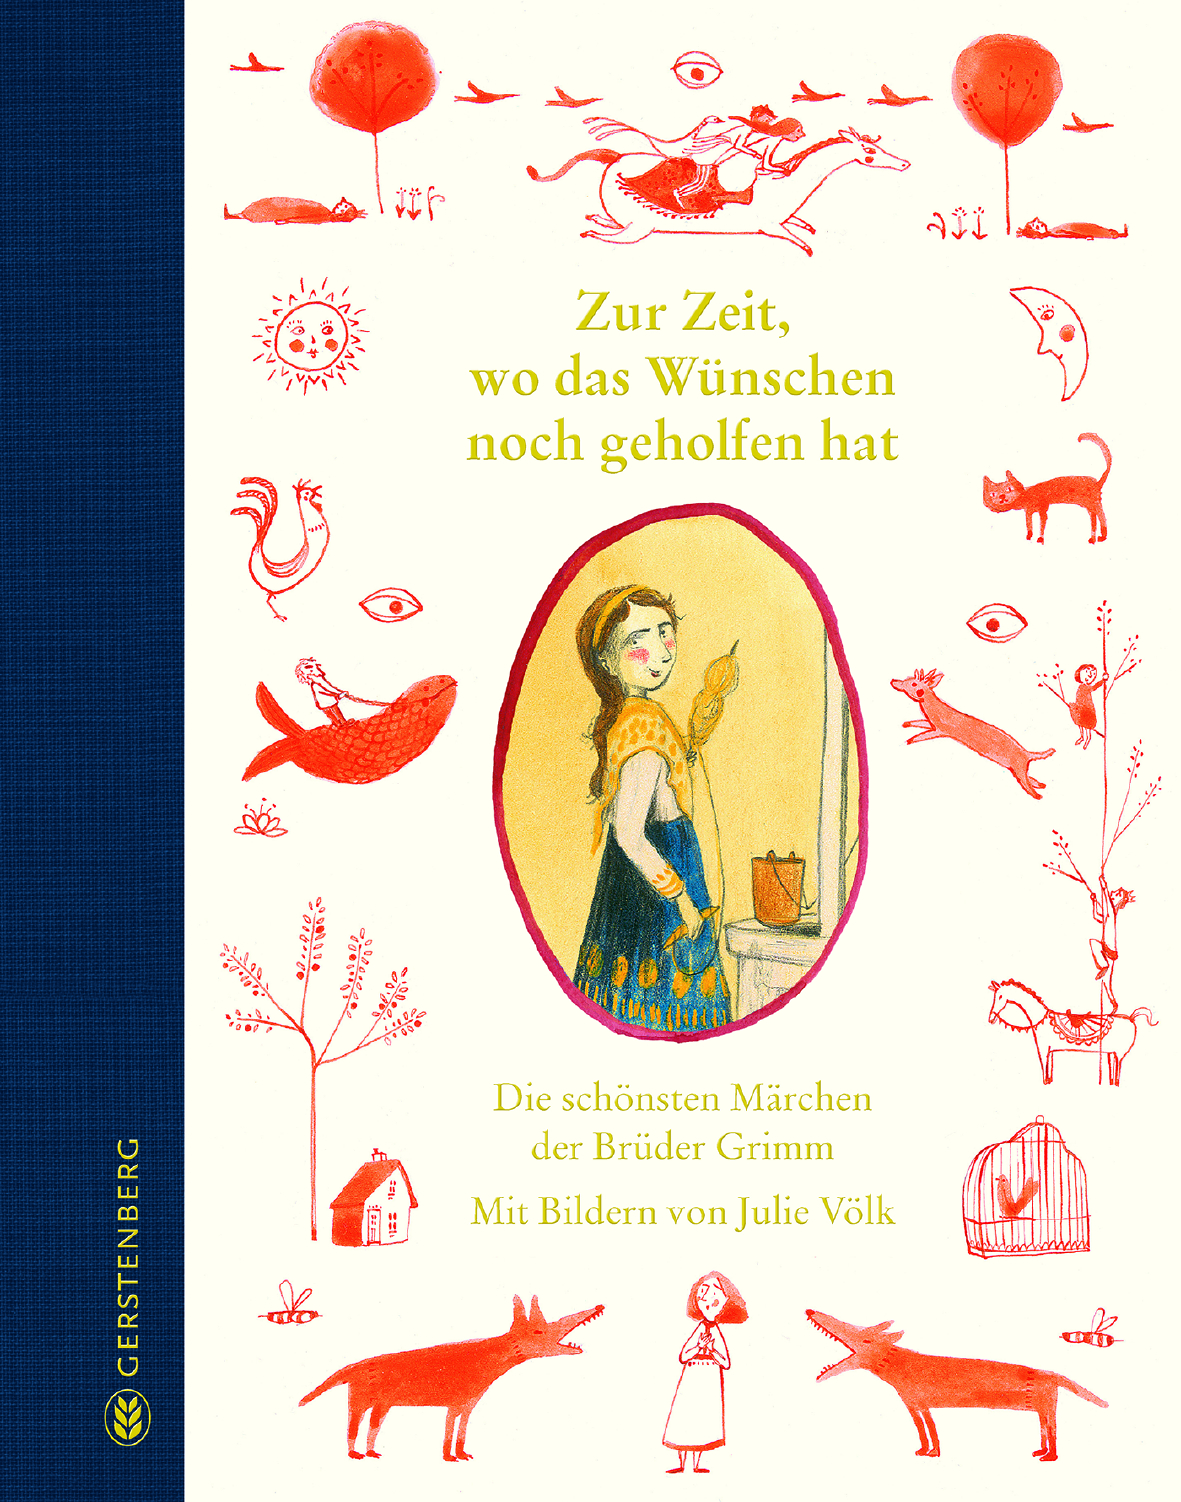 Buchcover "Zur Zeit, wo das Wünschen noch geholfen hat", Gerstenberg